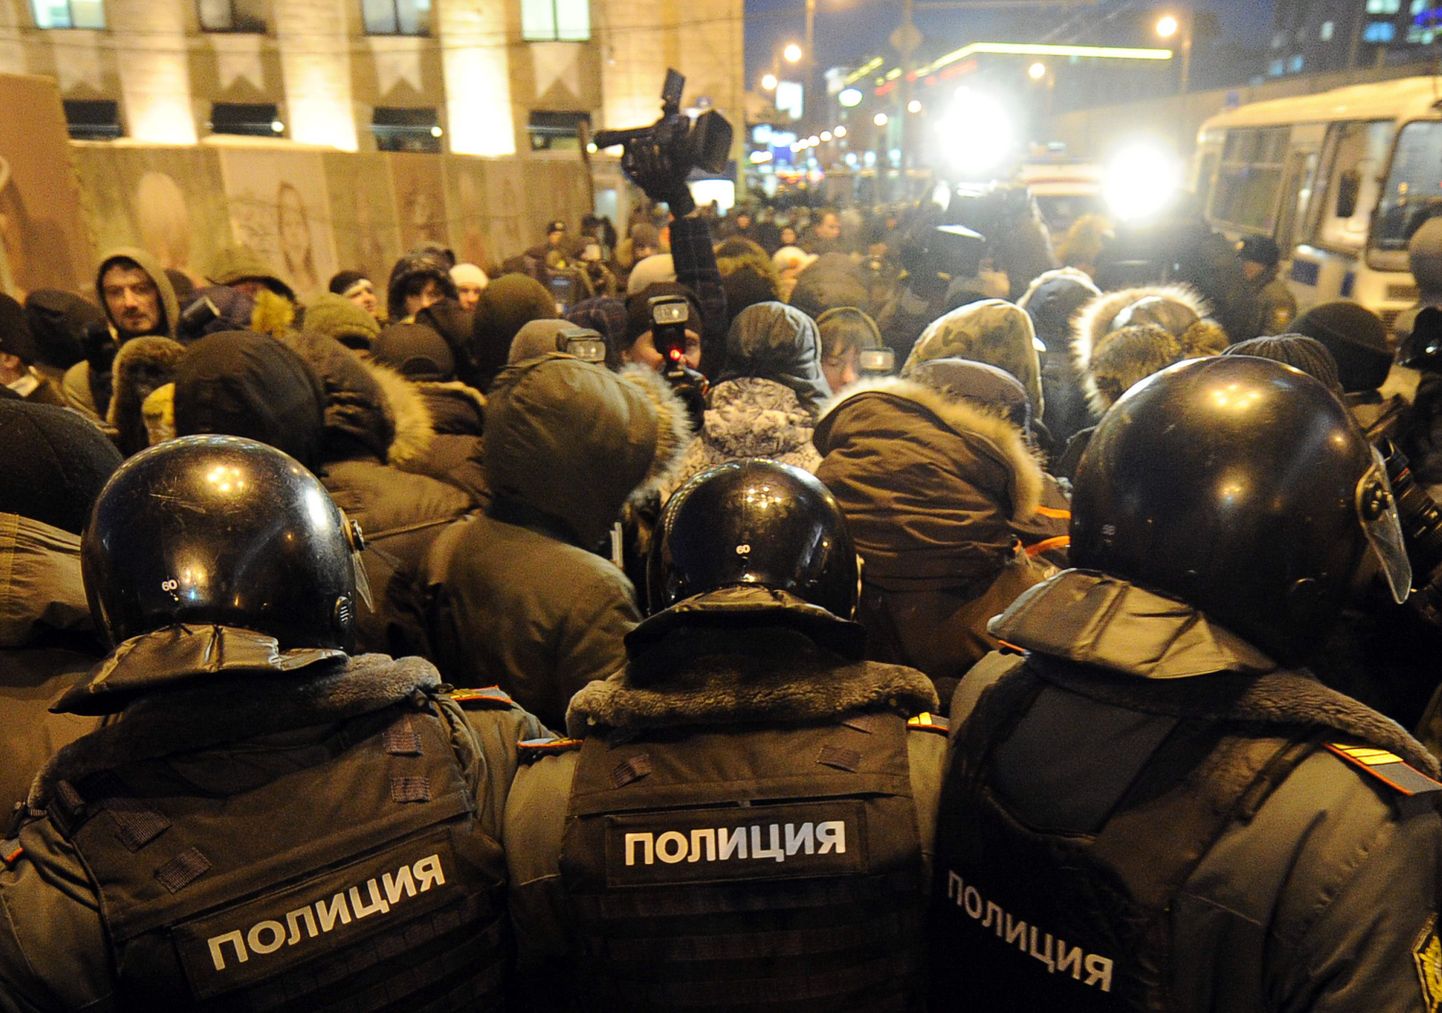 Märulipolitsei eile Moskvas registreerimata meeleavaldusel osavõtjaid vahistamas. Protest oli korraldatud Vene põhiseaduse artikli 31 toetuseks, mis annab õiguse avalikeks kogunemisteks.